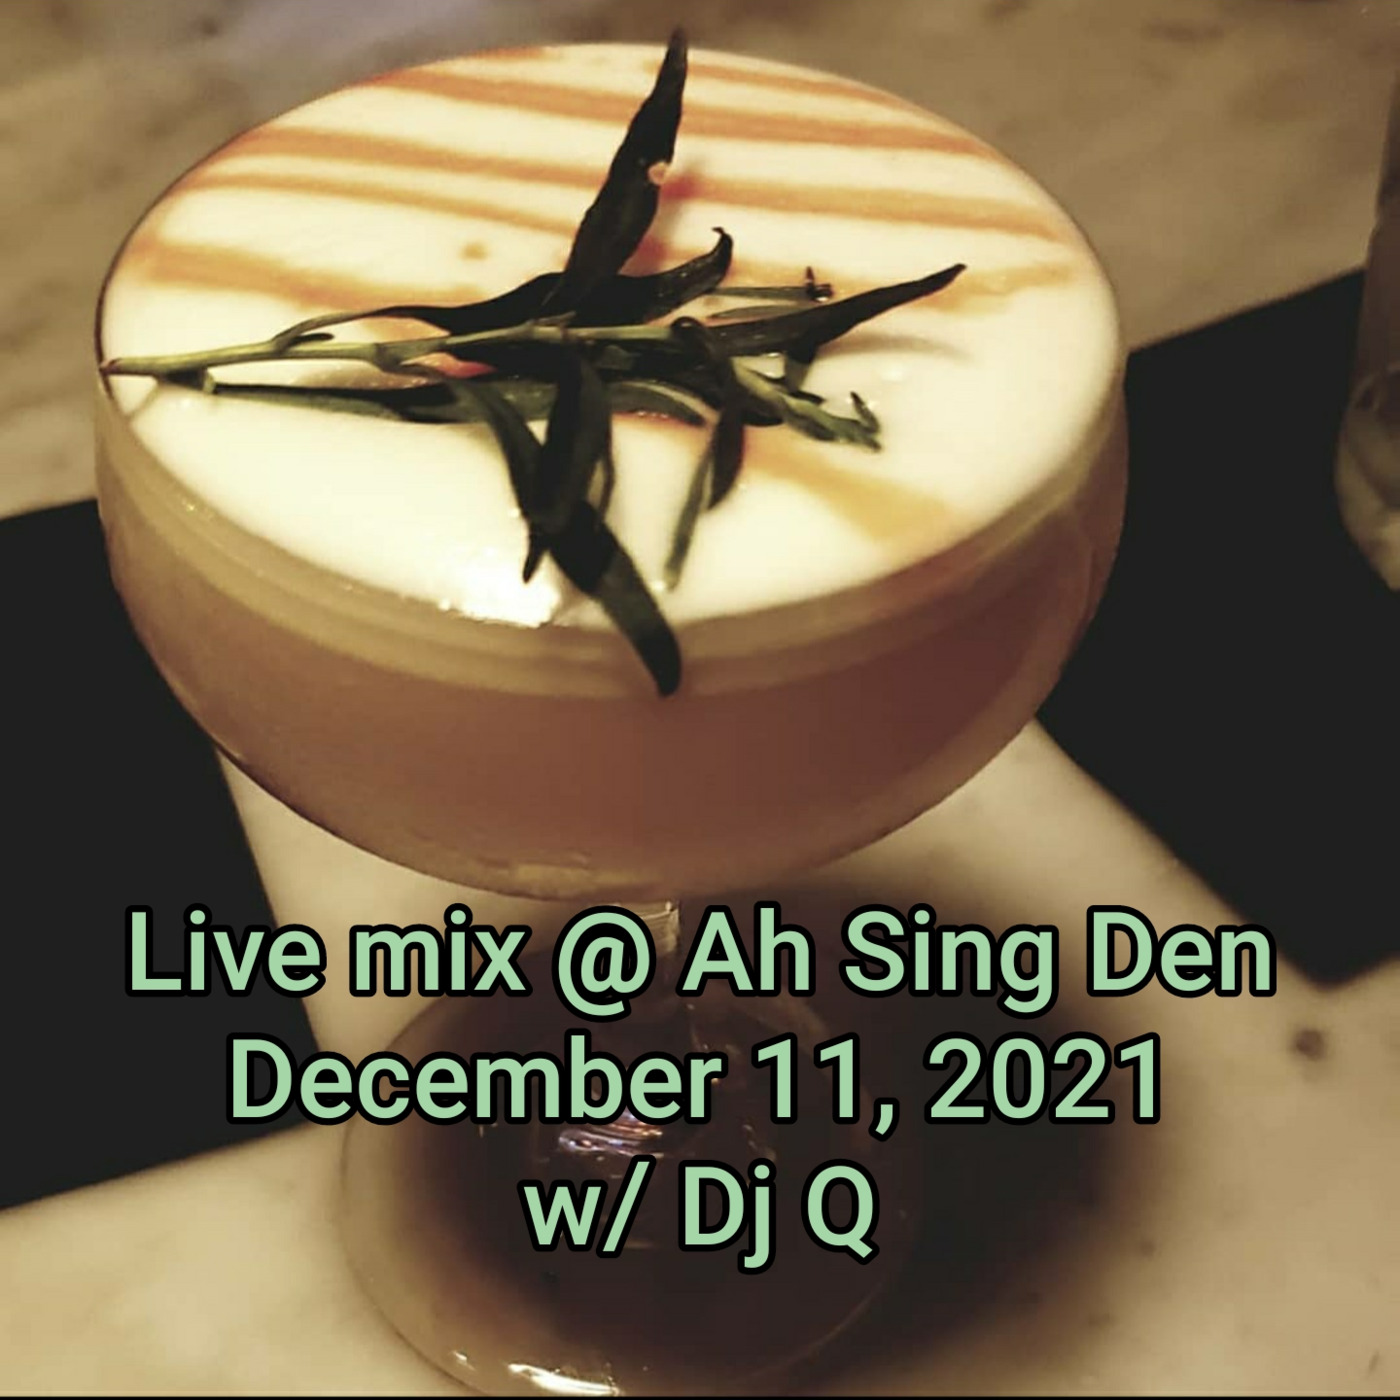 Episode 36: Live @ Ah Sing Den December 11, 2021